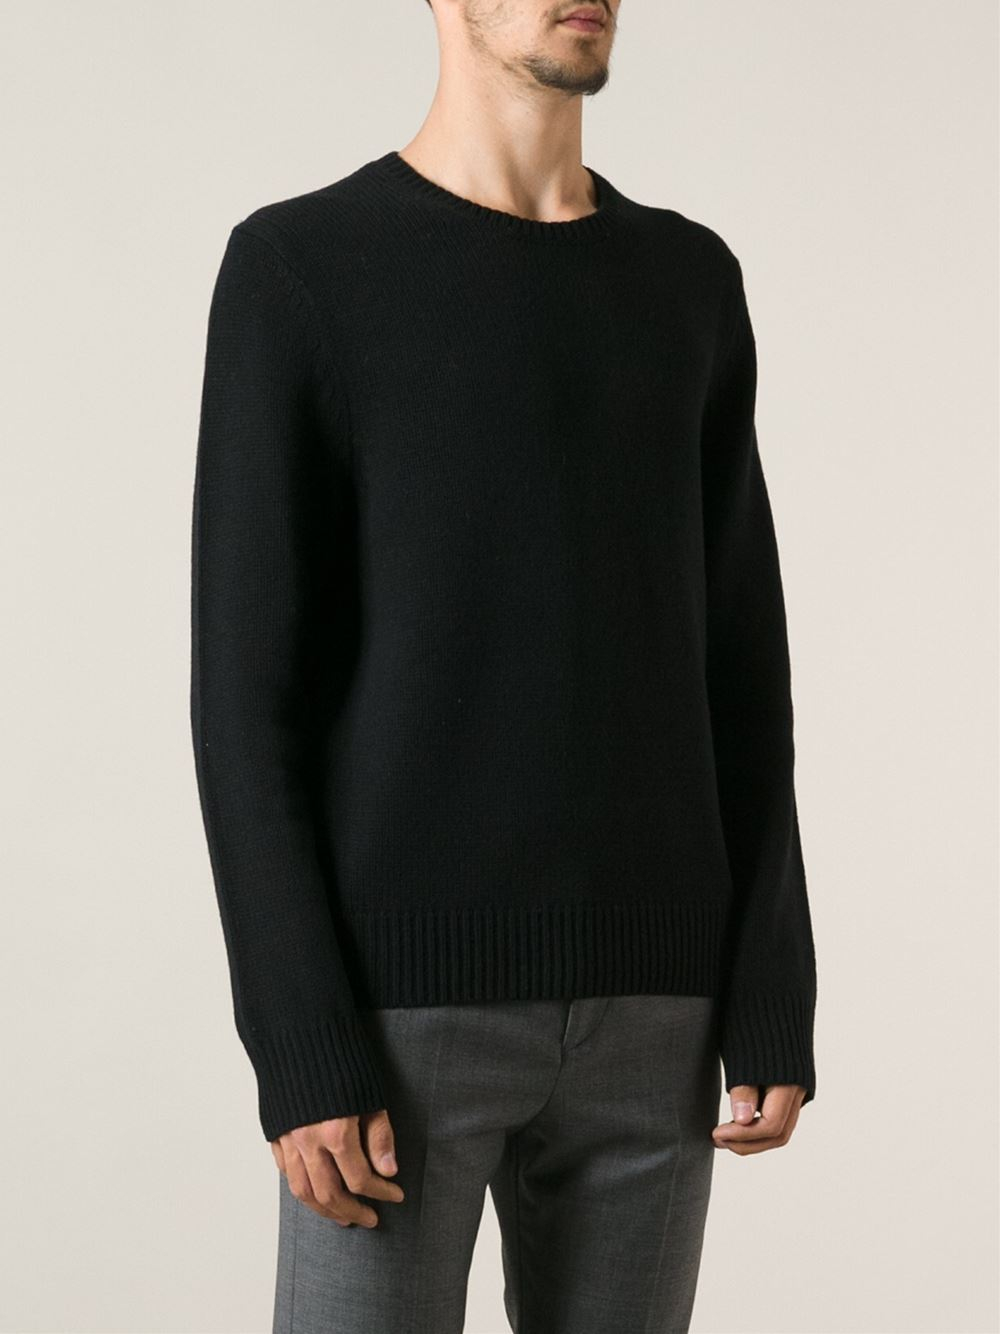 Acne Studios 'Chet' Sweater in Black for Men - Lyst